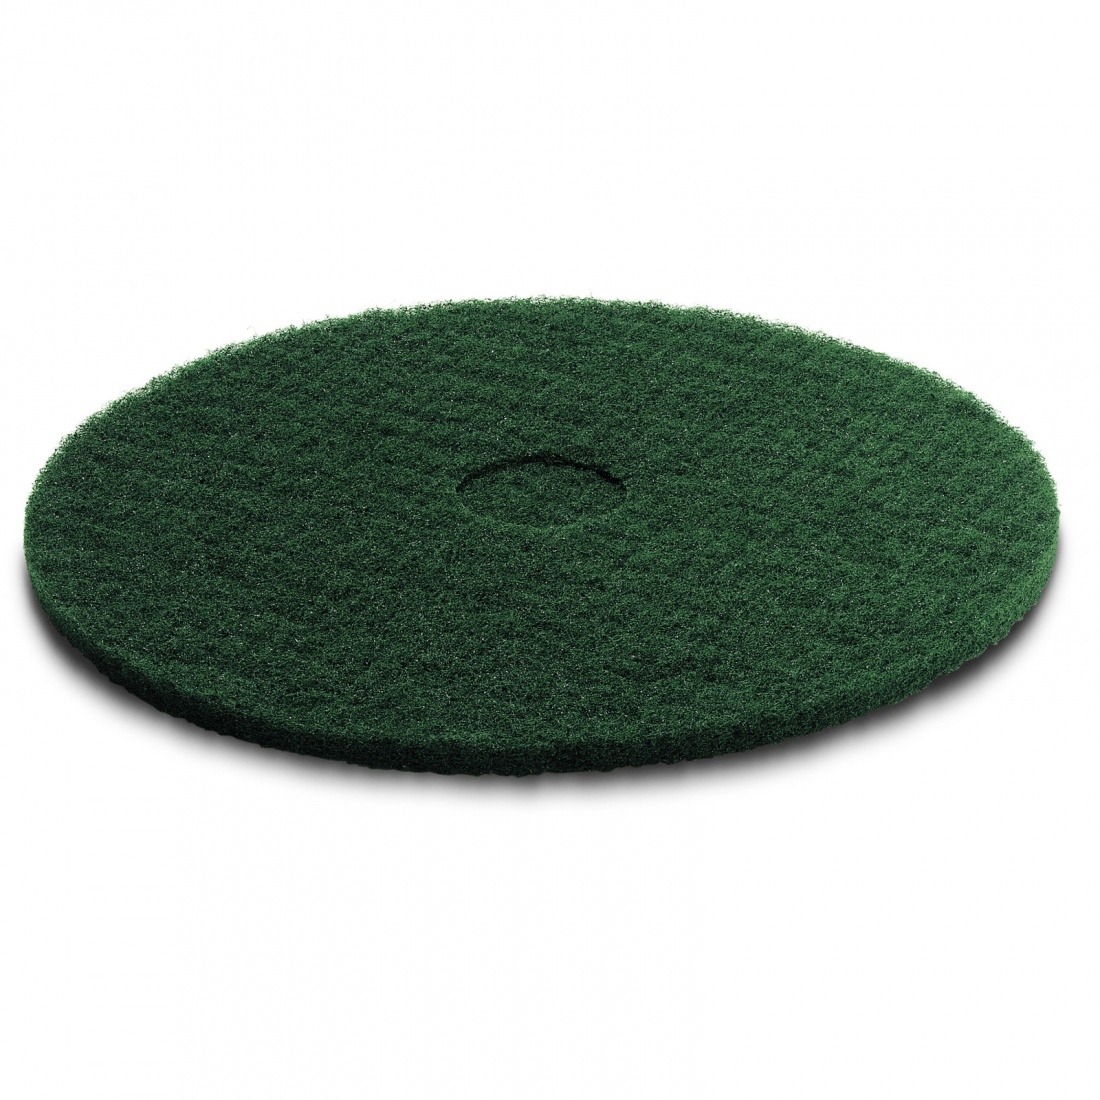 Пад, средне жесткий, зеленый, 508 mm